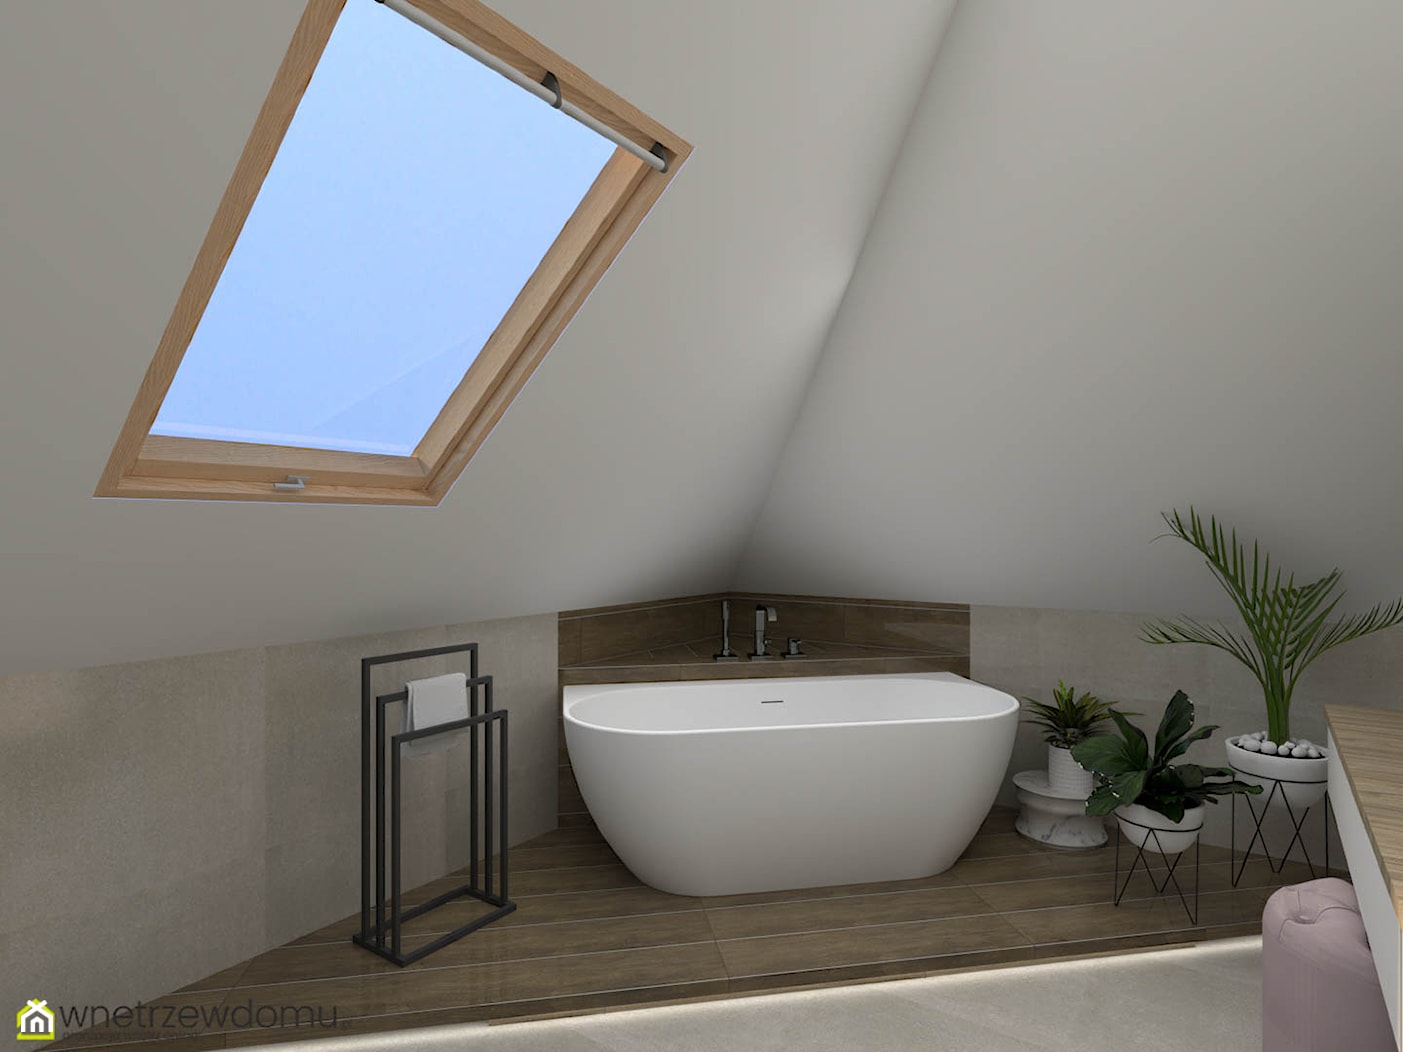 Okrągłe duże lustro i okno dachowe w łazience ze skosami - zdjęcie od wnetrzewdomu - Homebook